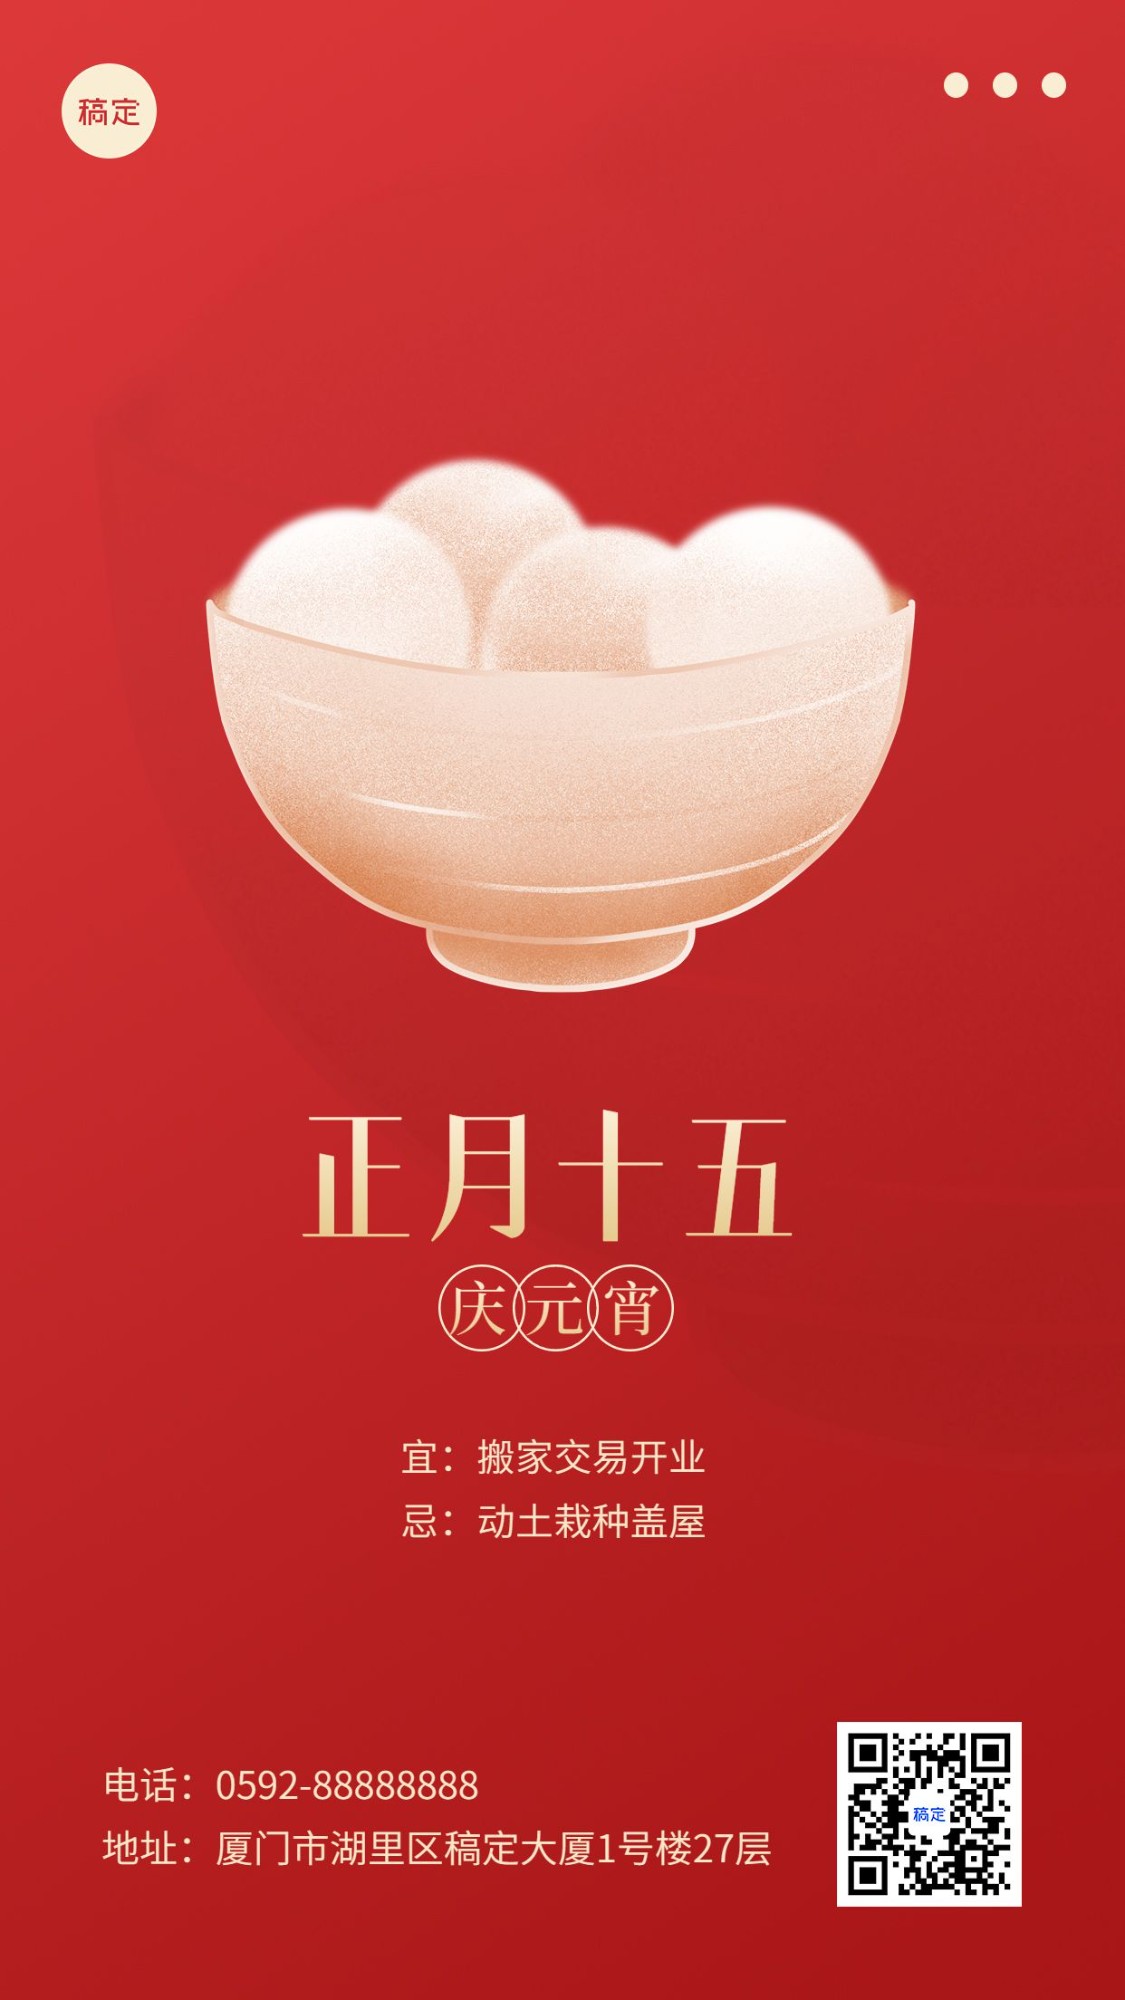 春节新年祝福正月十五简约排版套系手机海报